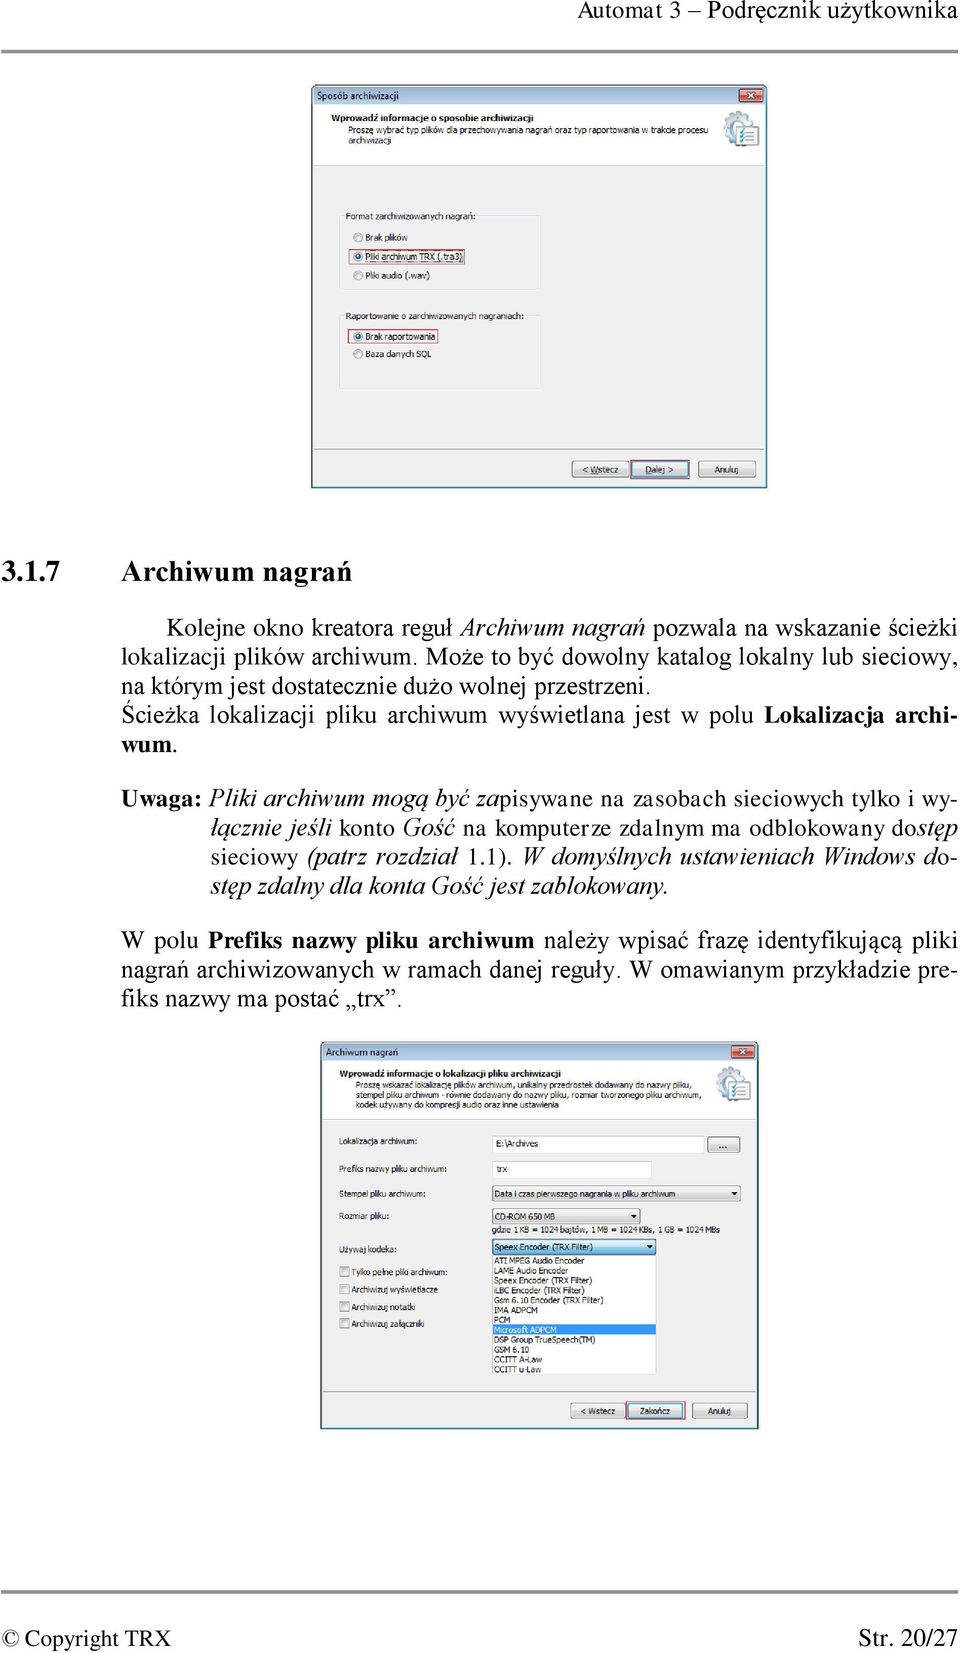 Uwaga: Pliki archiwum mogą być zapisywane na zasobach sieciowych tylko i wyłącznie jeśli konto Gość na komputerze zdalnym ma odblokowany dostęp sieciowy (patrz rozdział 1.1).